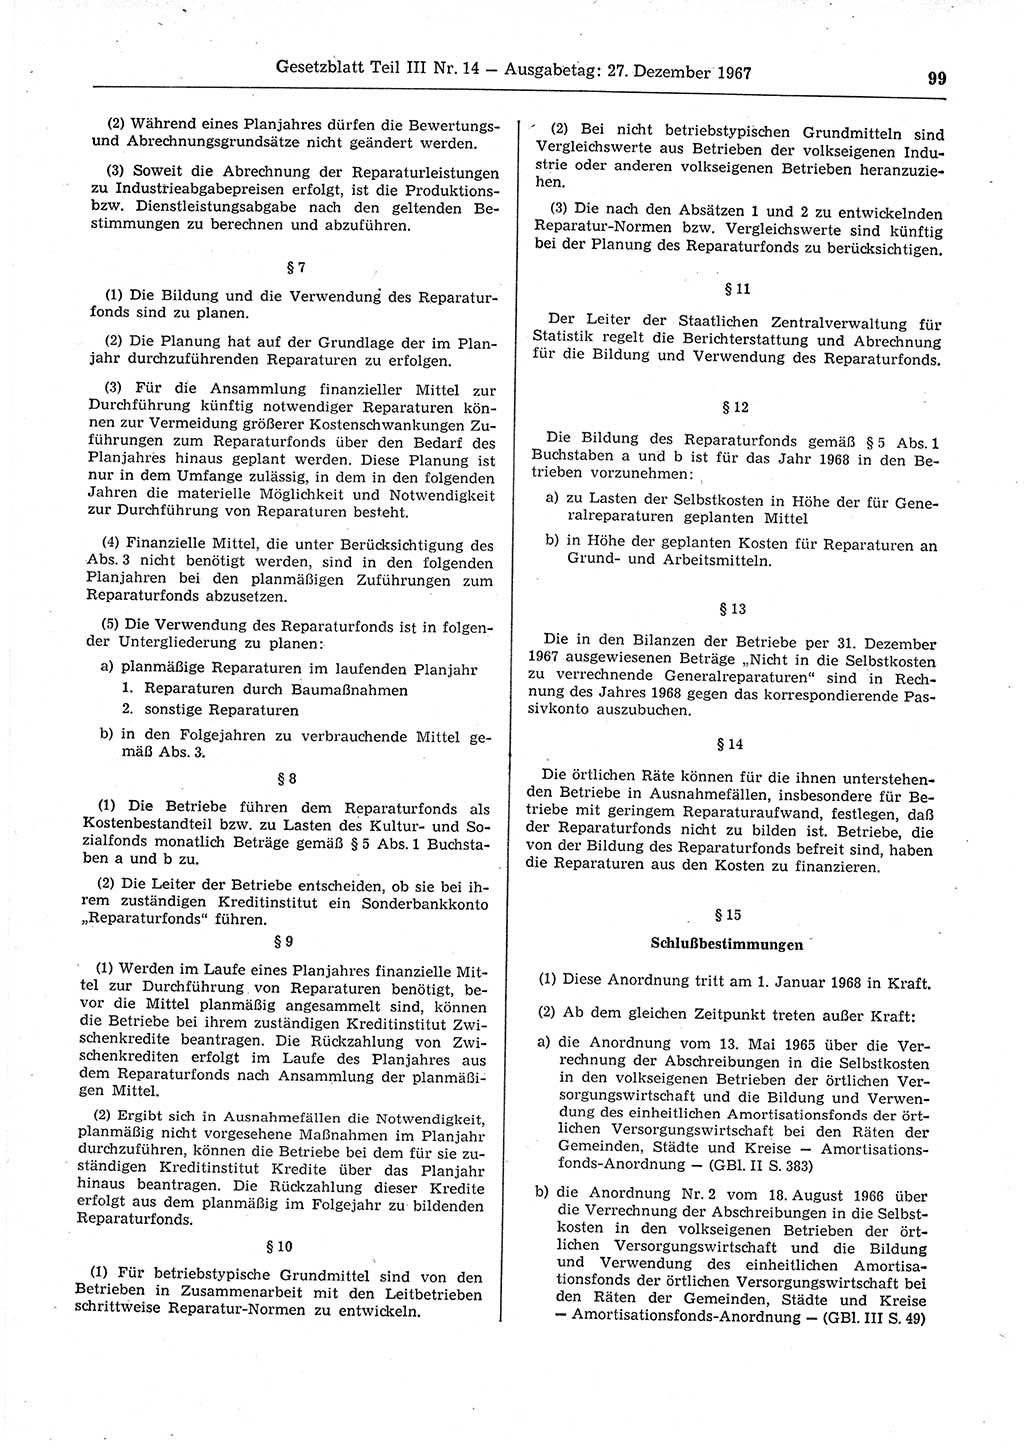 Gesetzblatt (GBl.) der Deutschen Demokratischen Republik (DDR) Teil ⅠⅠⅠ 1967, Seite 99 (GBl. DDR ⅠⅠⅠ 1967, S. 99)